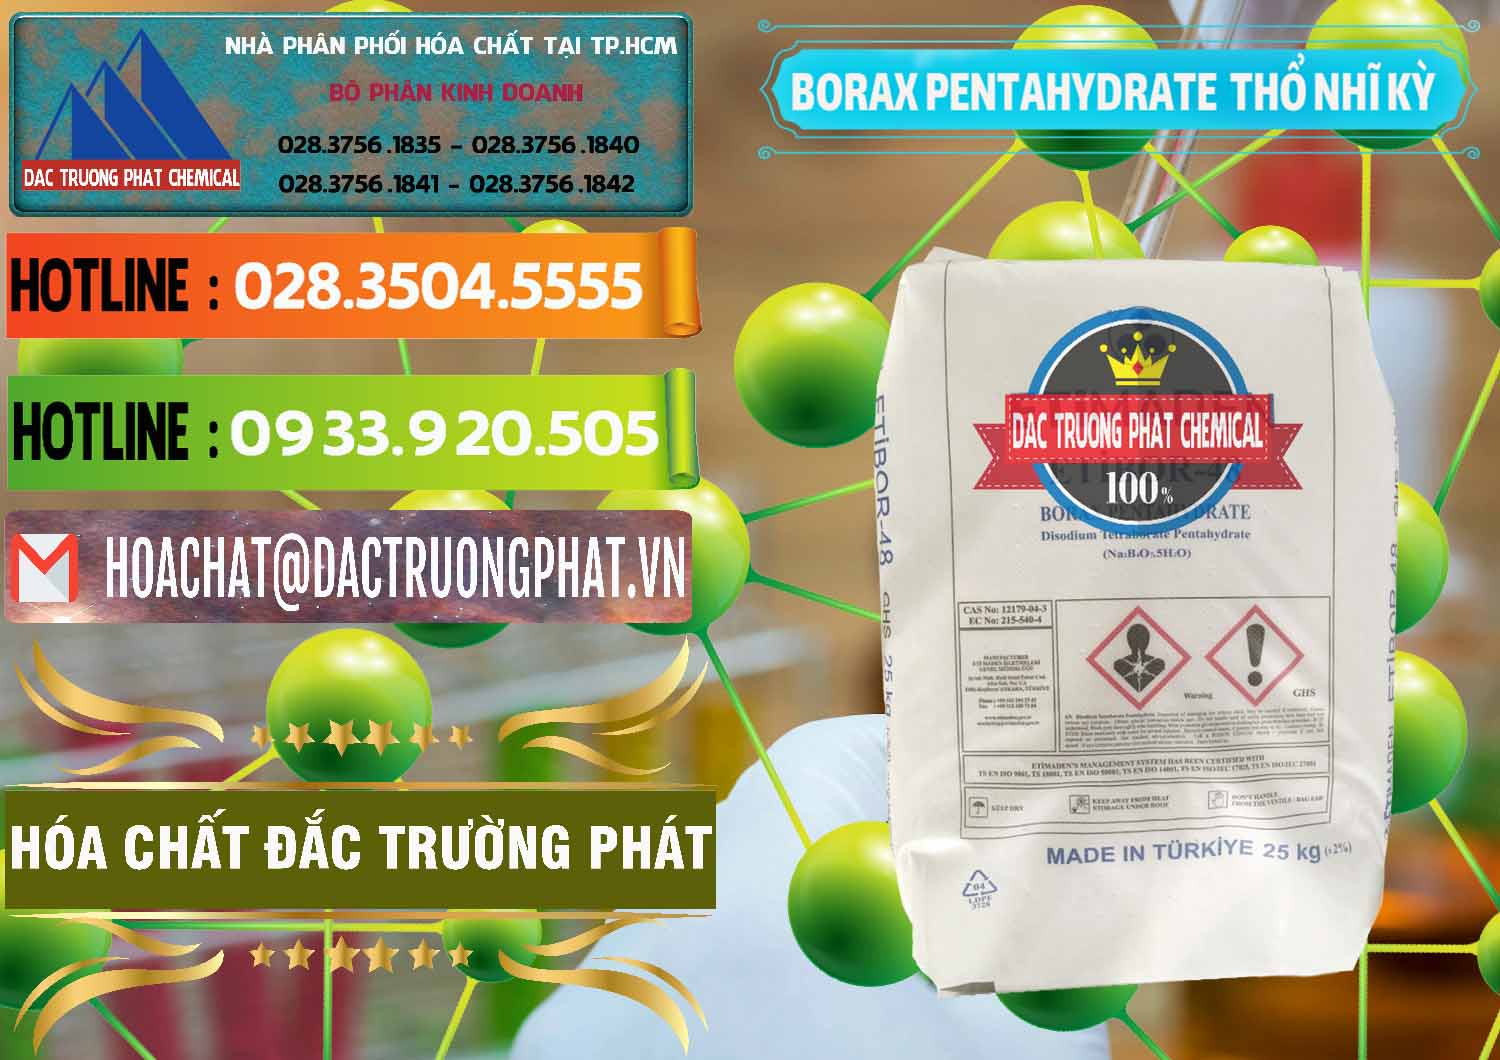 Chuyên bán & cung cấp Borax Pentahydrate Thổ Nhĩ Kỳ Turkey - 0431 - Chuyên phân phối và cung cấp hóa chất tại TP.HCM - cungcaphoachat.com.vn